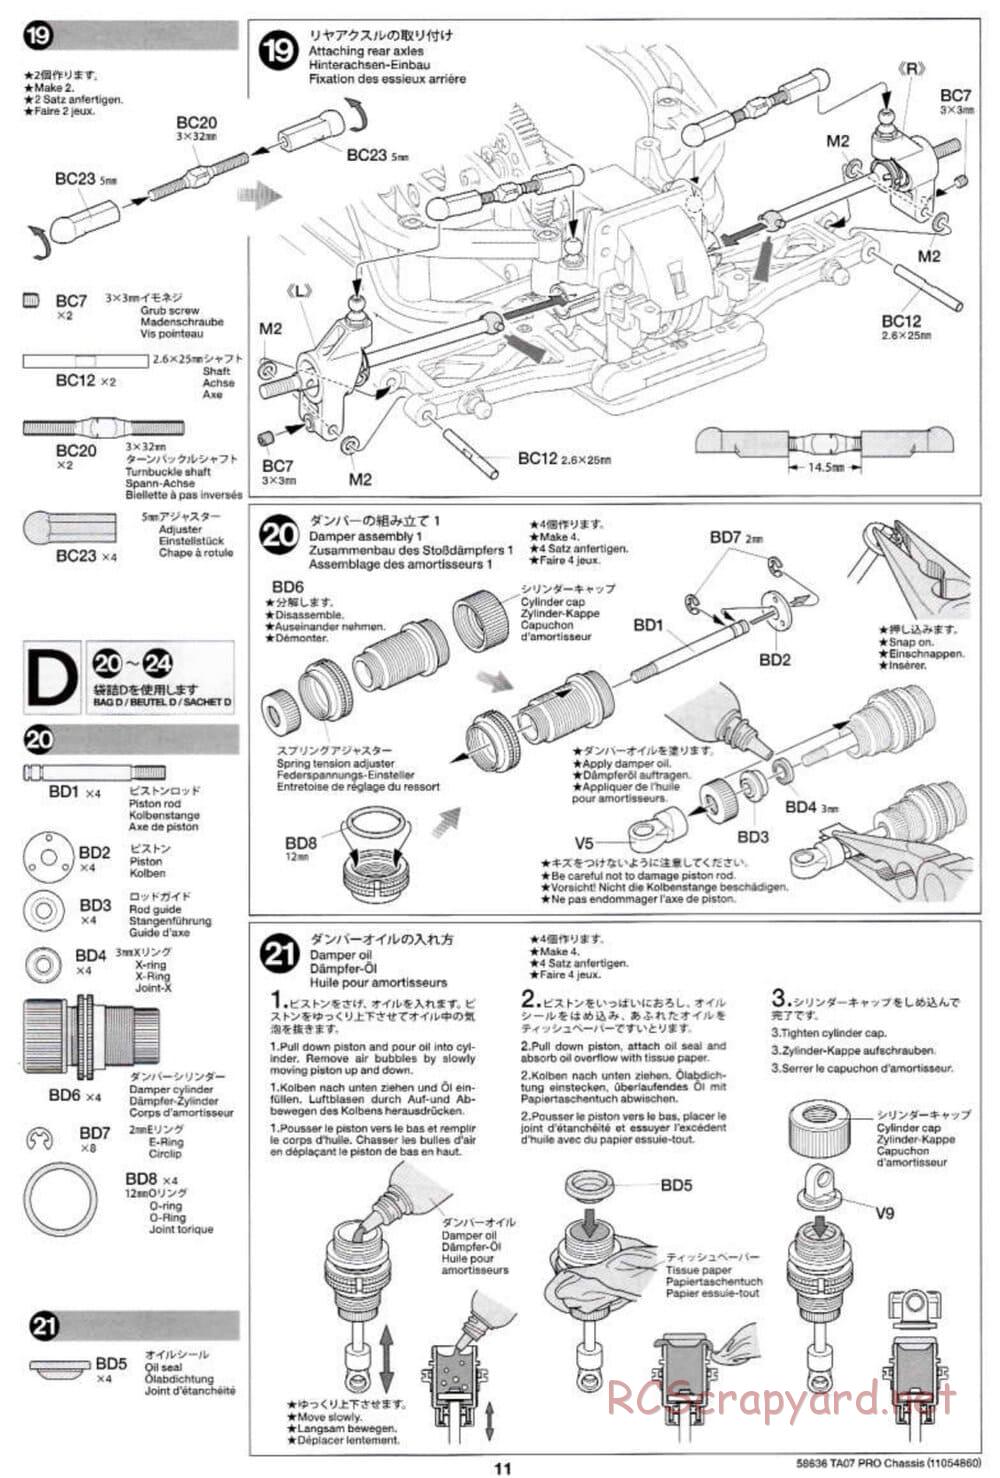 Tamiya - TA07 Pro Chassis - Manual - Page 11